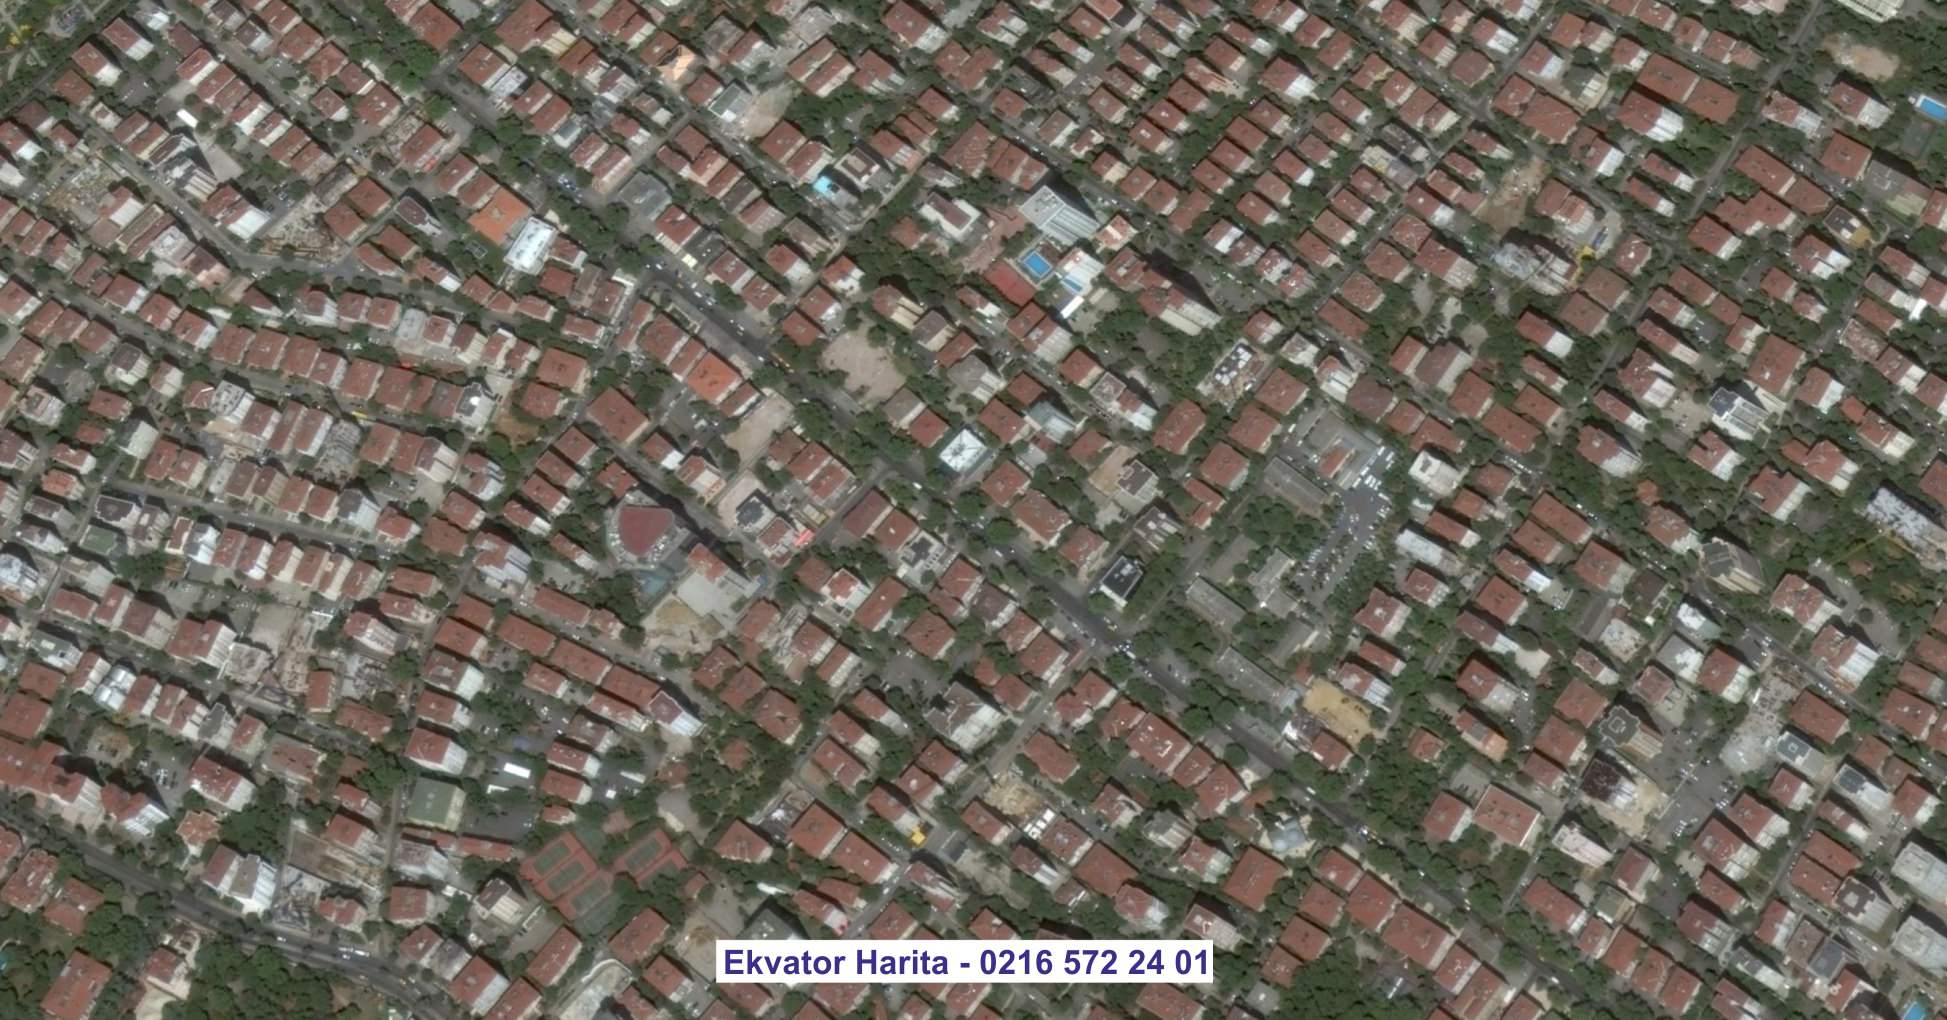 Bakü Uydu Görüntüsü Örnek Fotoğrafı